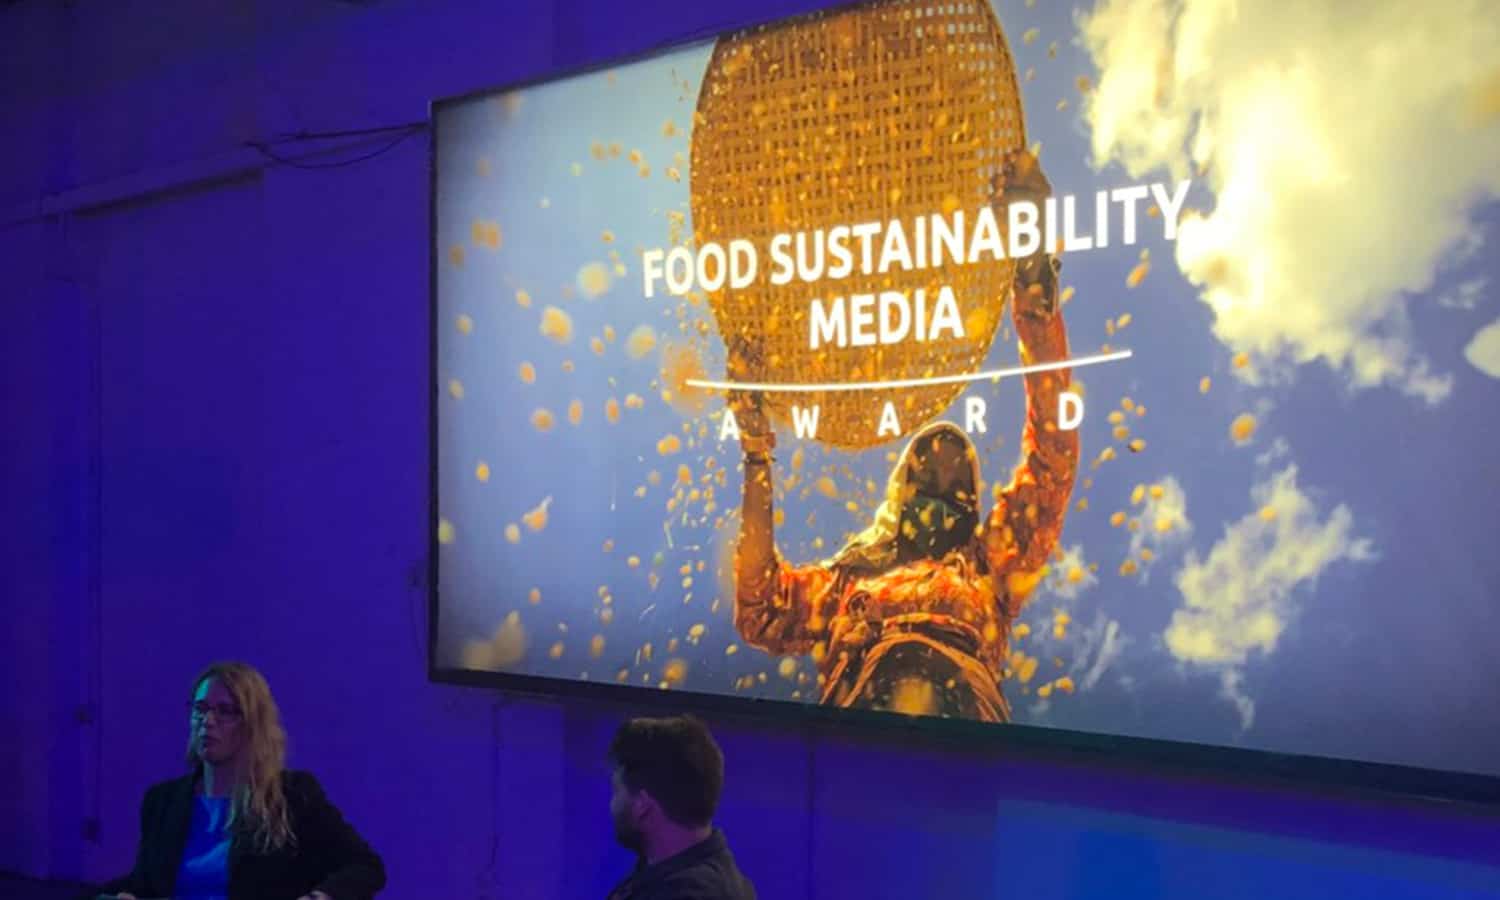 庆祝的食品可持续性媒体奖把焦点放在故事的食物不仅味道好,而且也有利于社会和植物造成一个更可持续的食物系统。